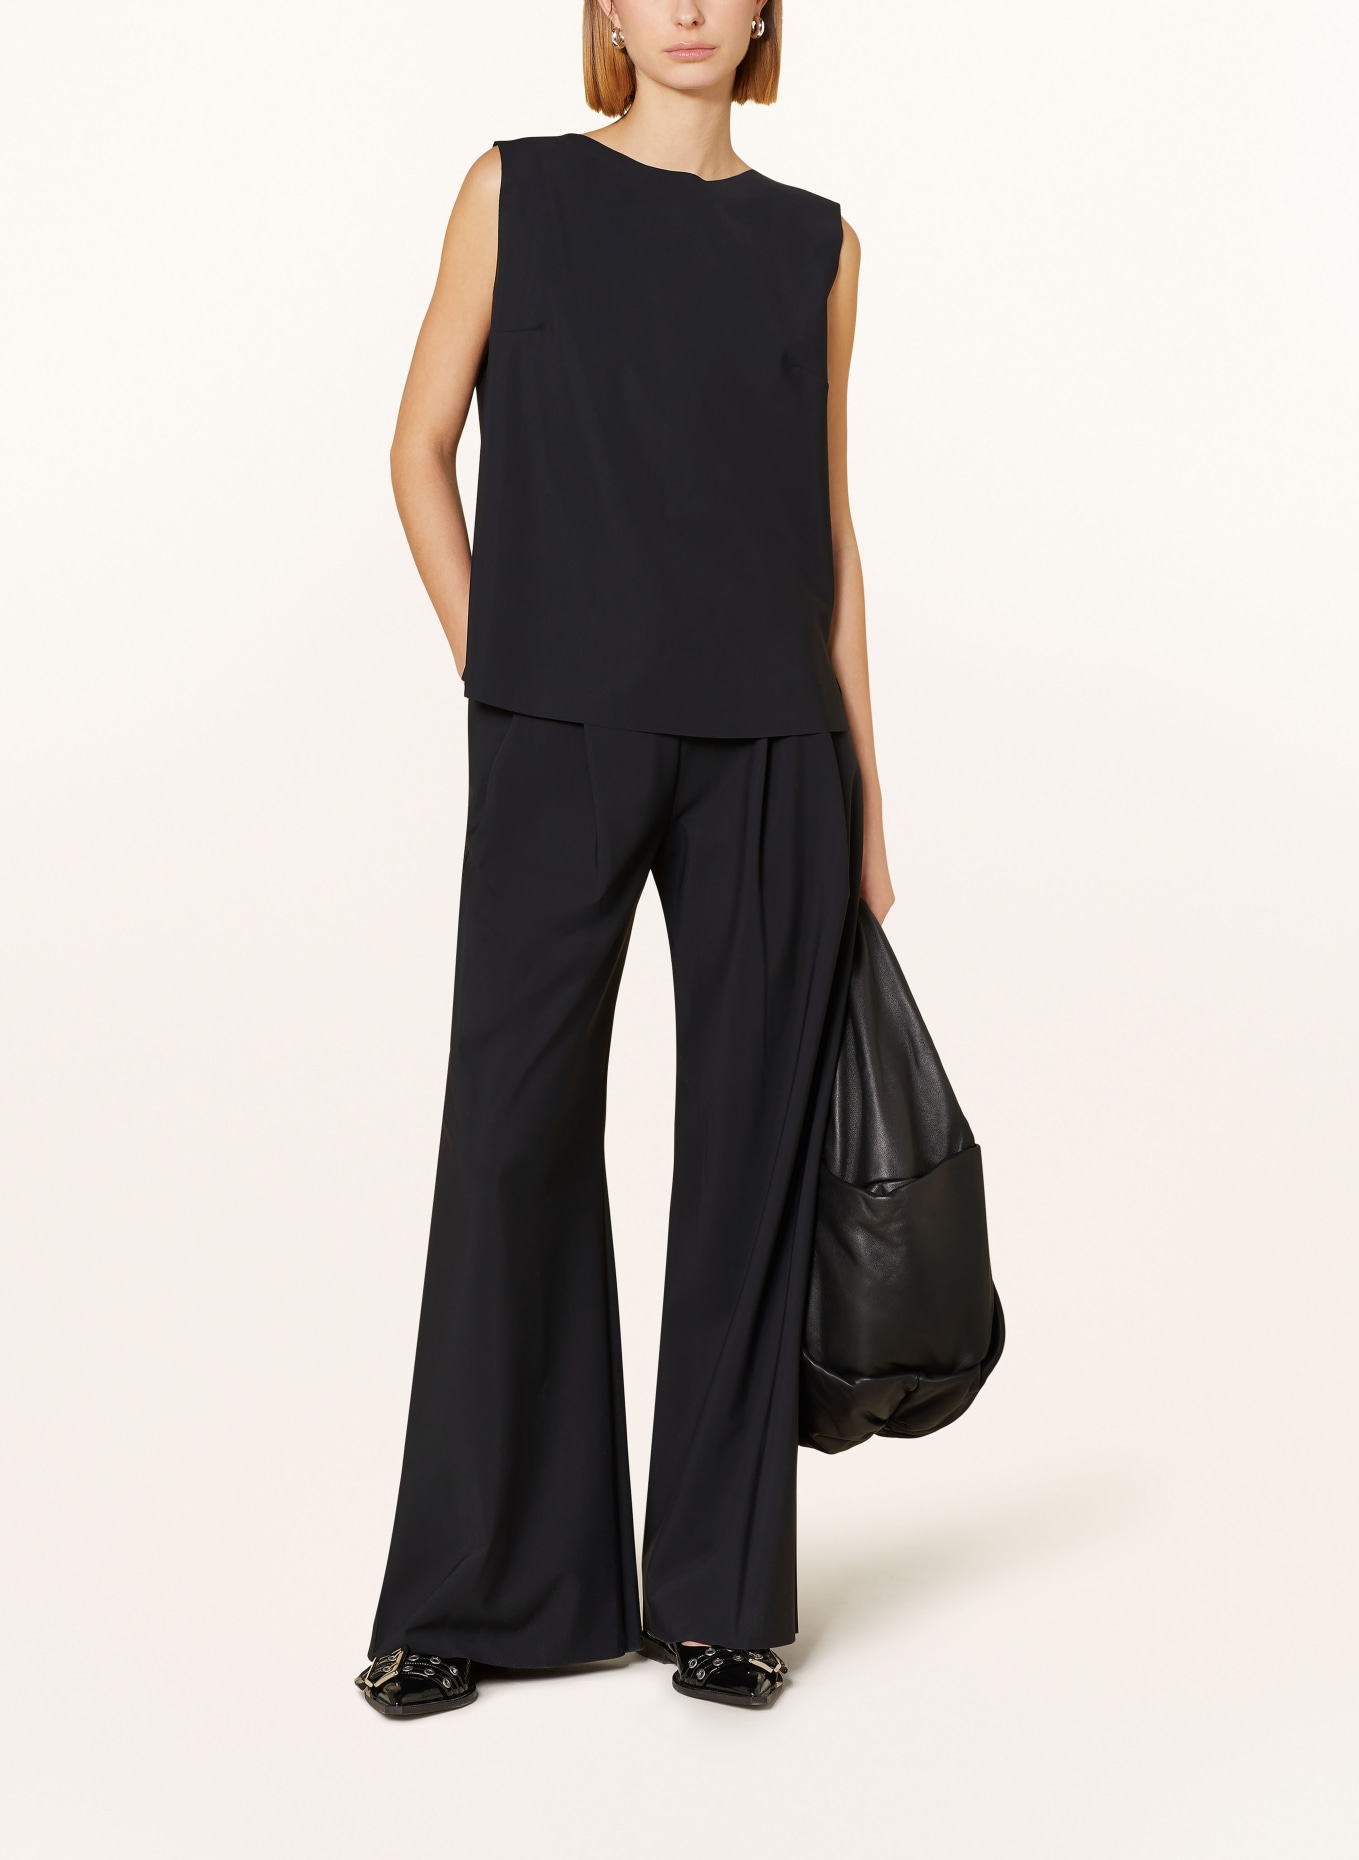 MRS & HUGS Blouse top, Color: BLACK (Image 2)